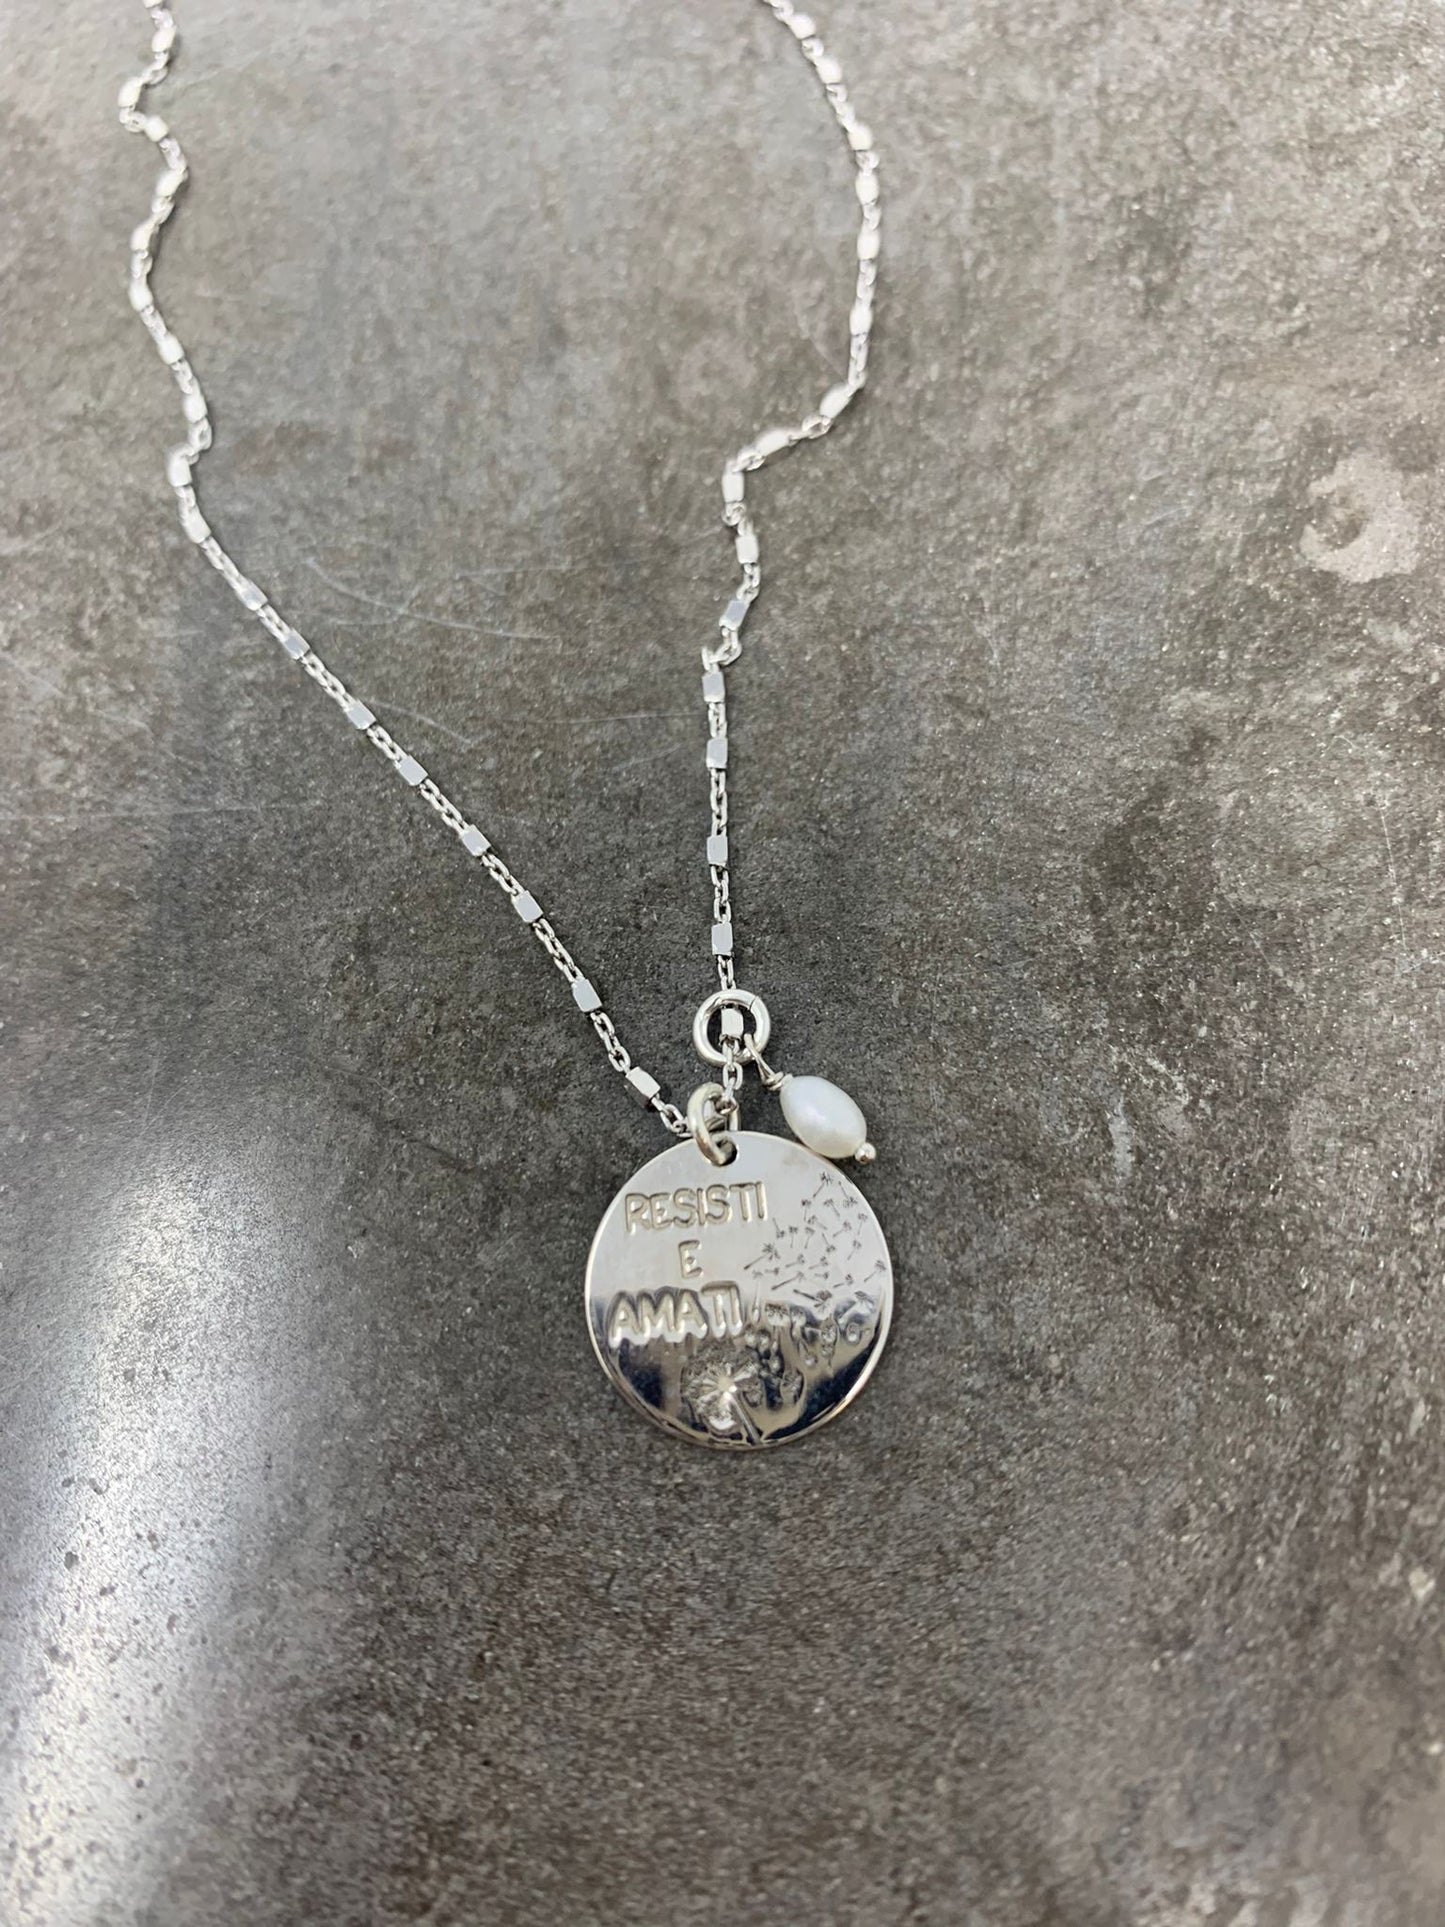 Collana catena dadini argento bianco cm45 con targhetta personalizzata RESISTI E AMATI e con inciso il soffione ed una piccola perla pendente